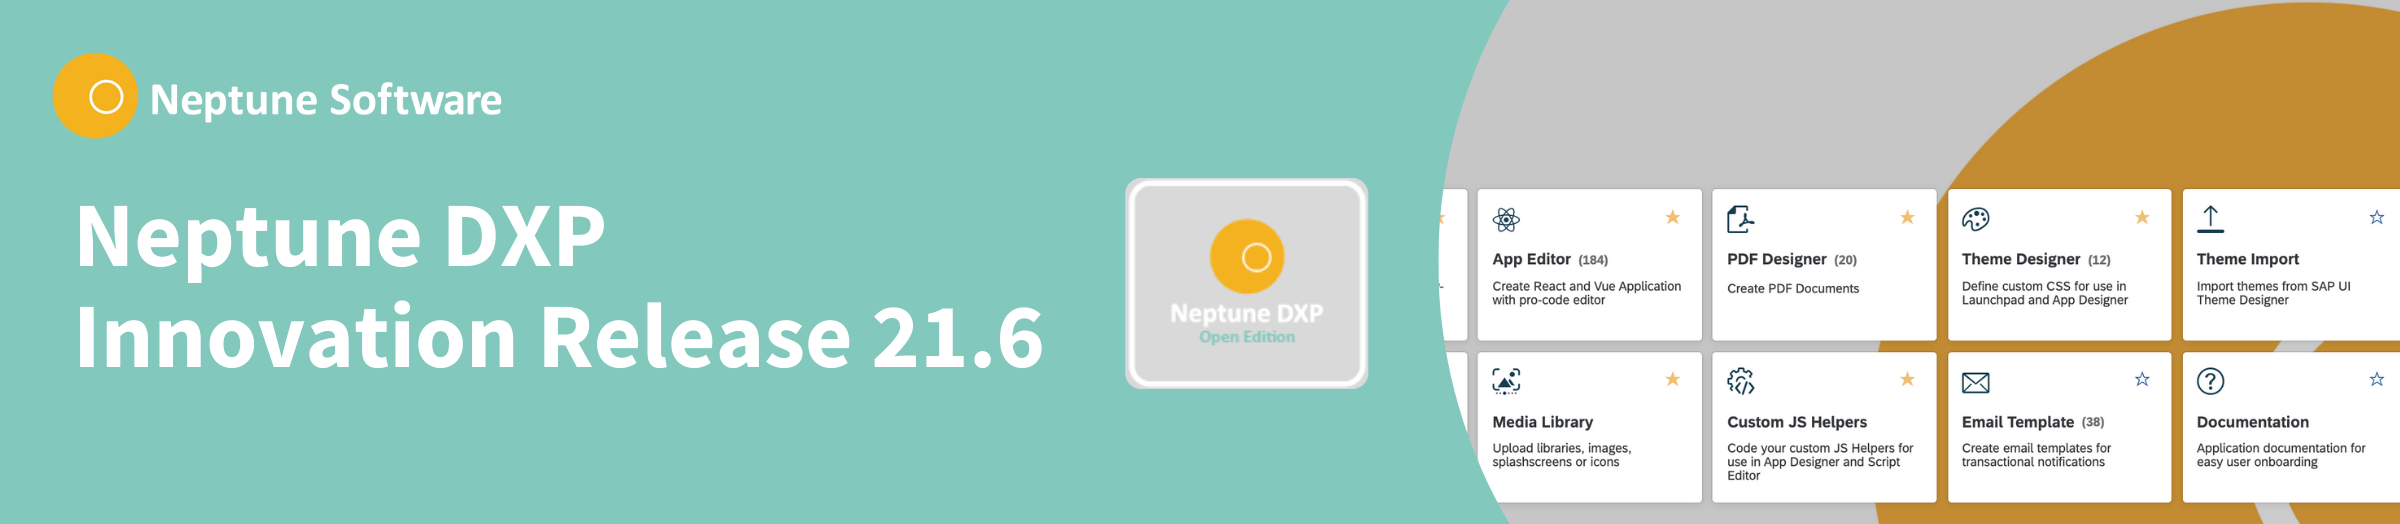 Neptune DXP Open Edition 